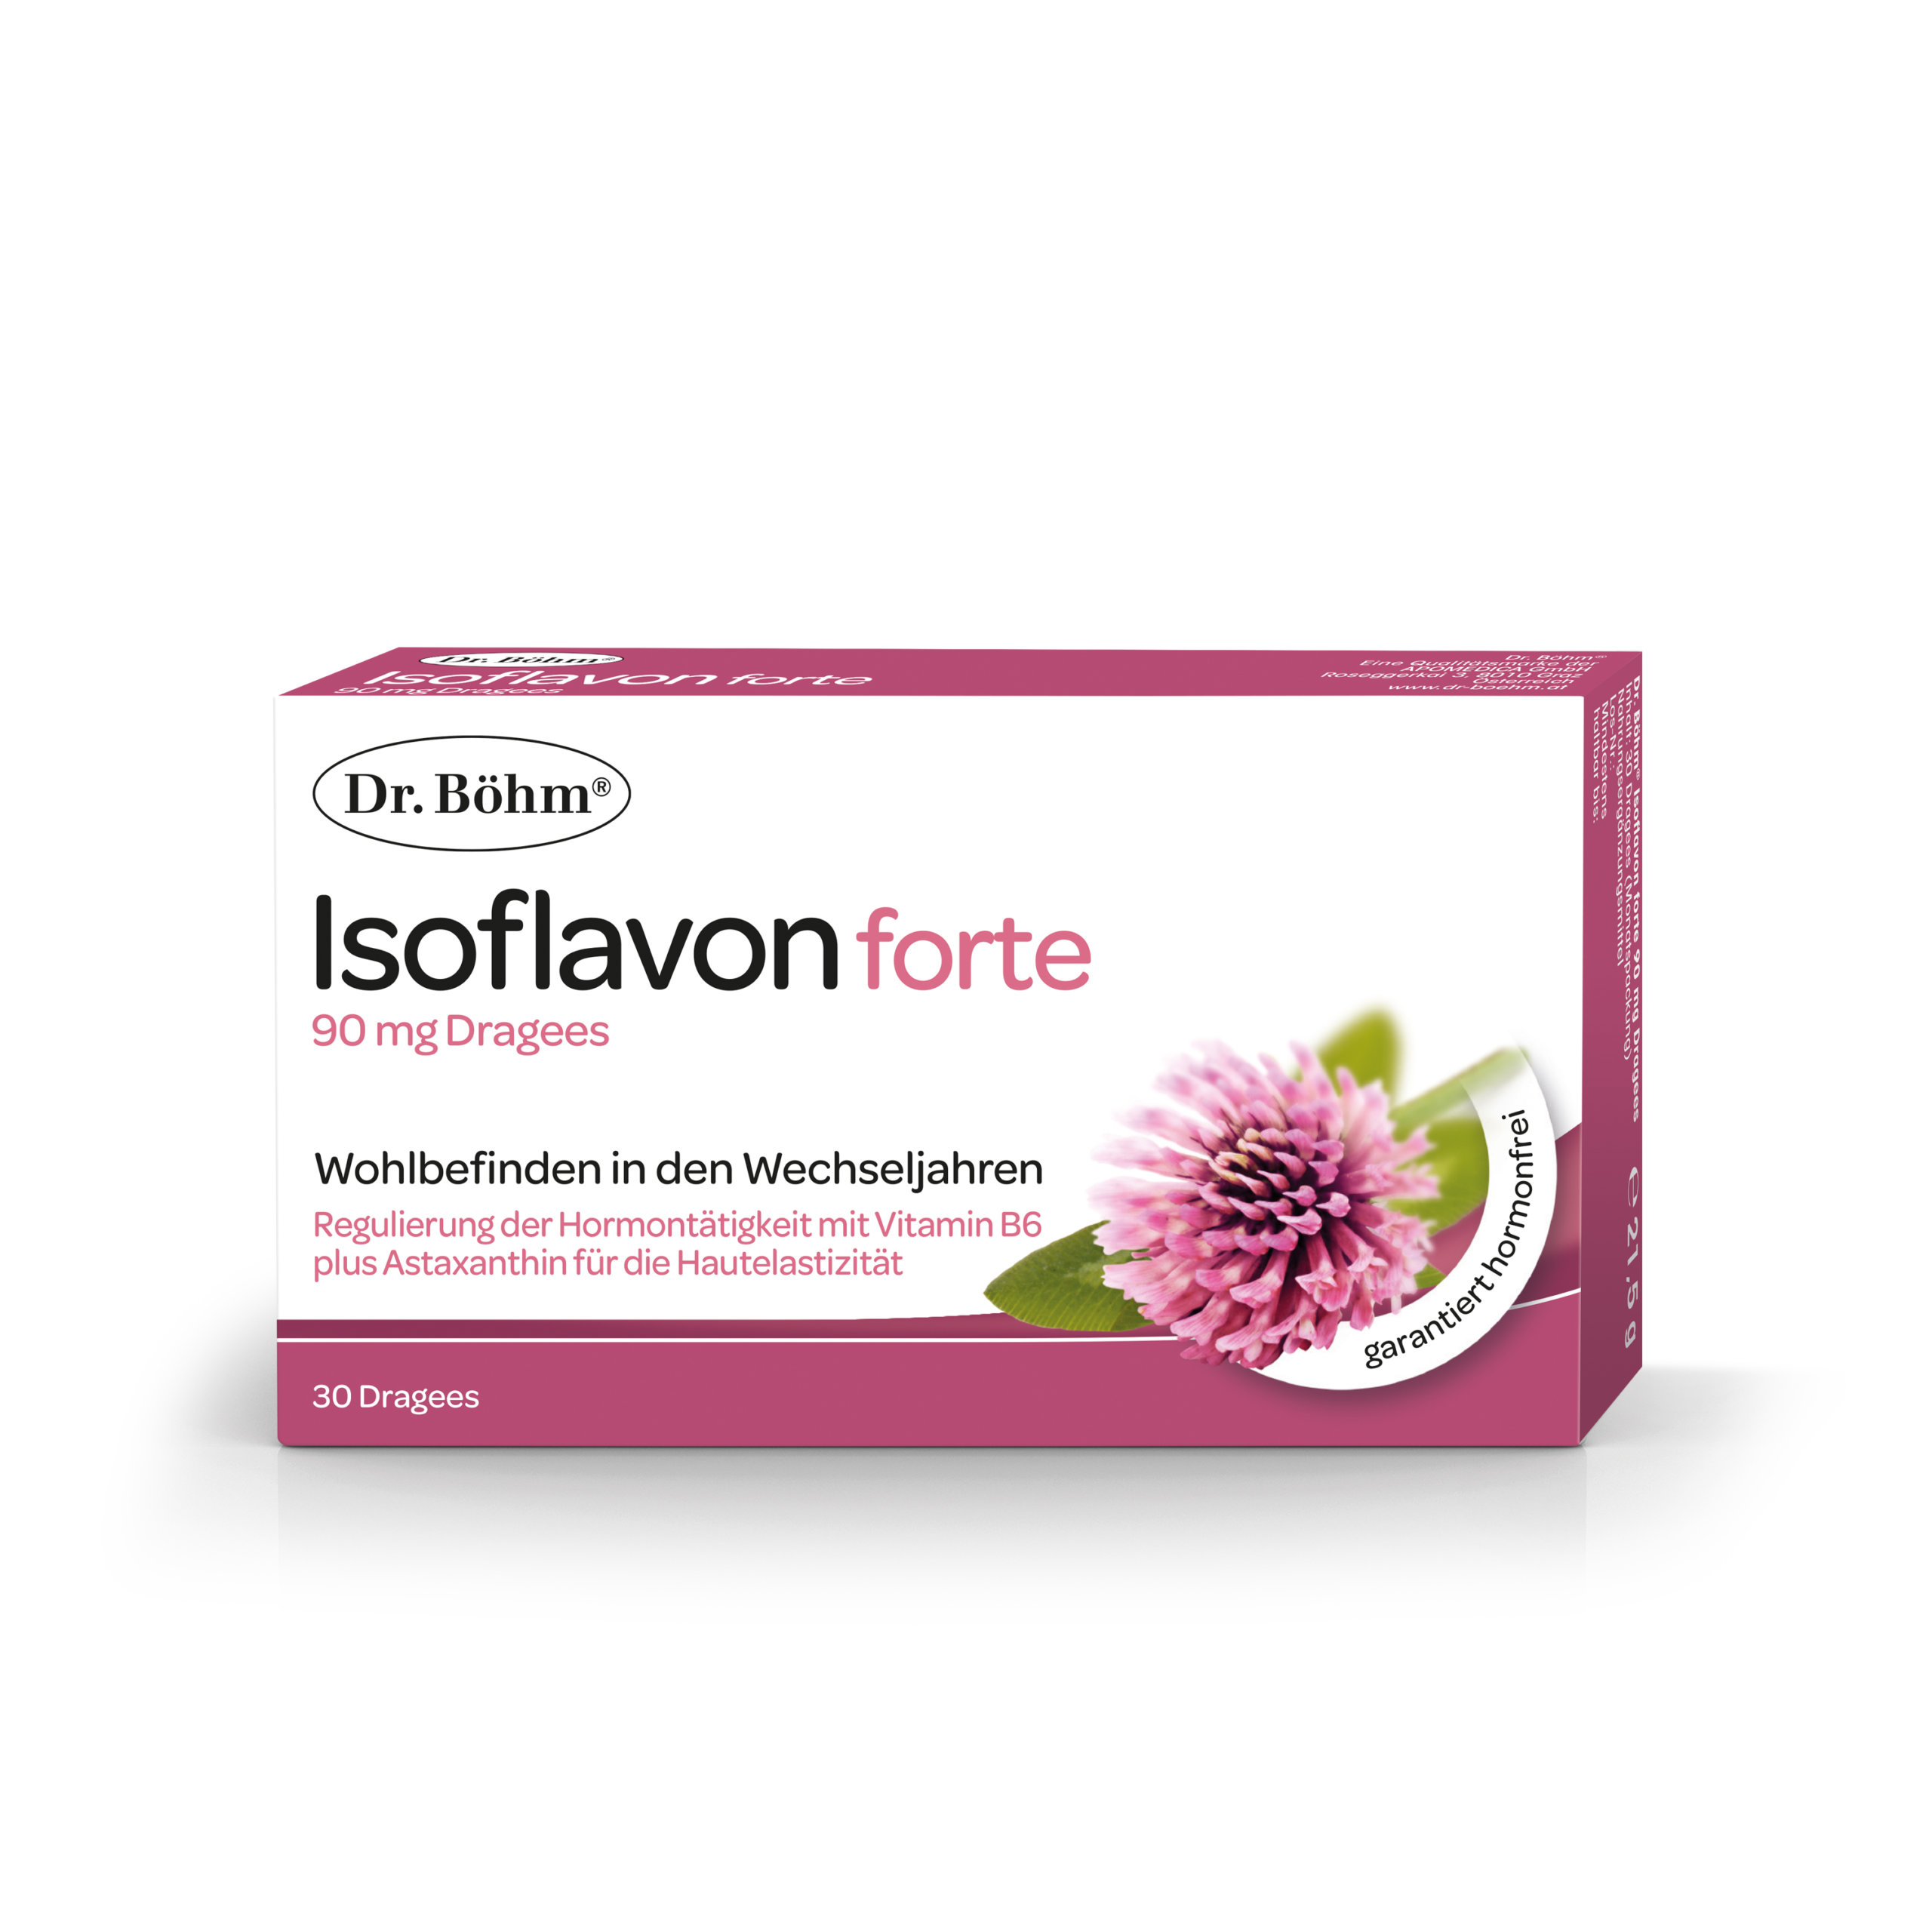 Dr. Böhm® Isoflavon forte 90 mg - Wohlbefinden in den Wechseljahren